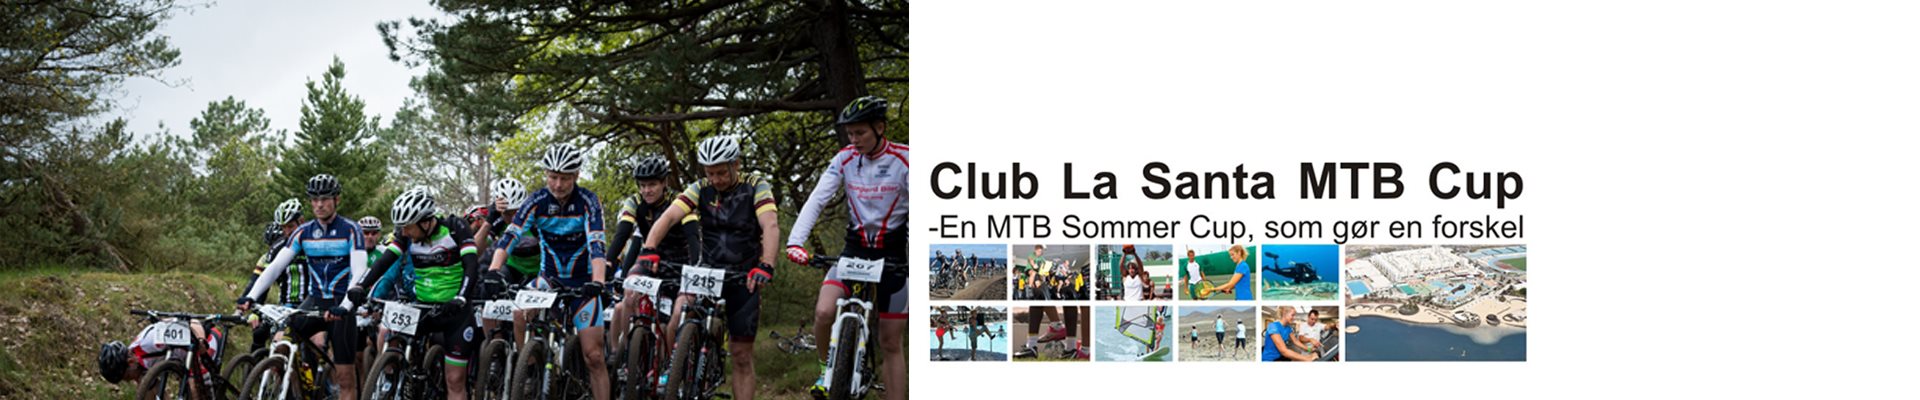 CLUB LA SANTA MTB CUP '23 - #7 Mentor IT MTB, Esbjerg